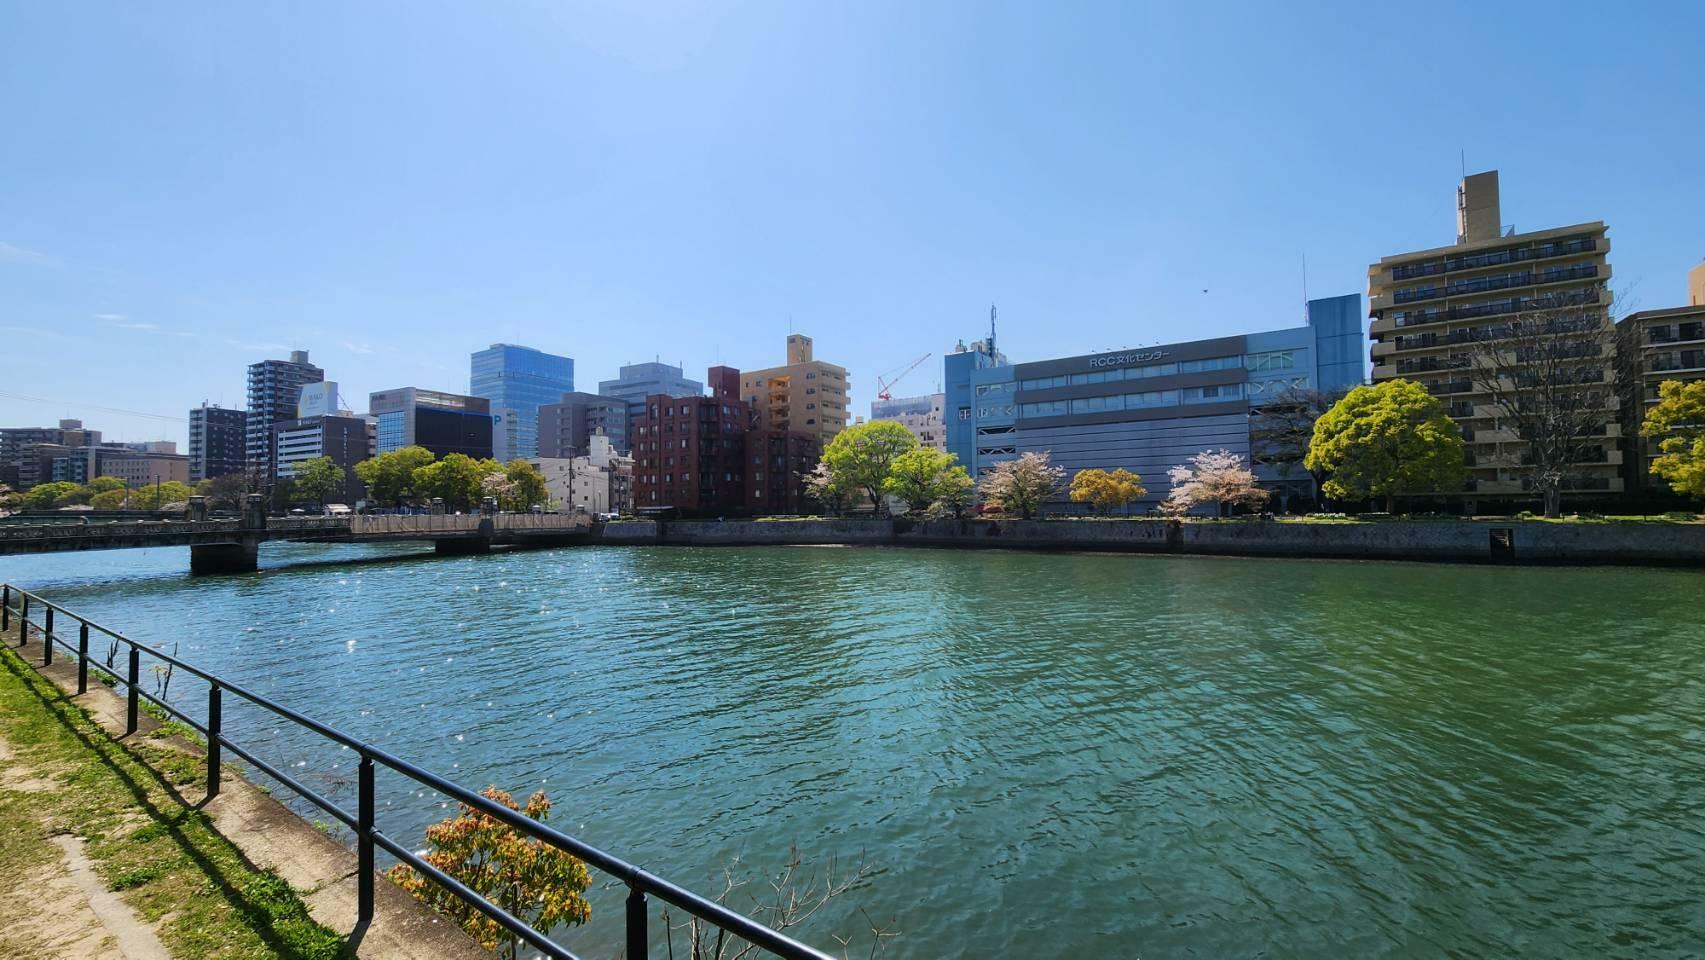 京橋川は太田川支流で、大芝橋で分岐。広島駅近くで猿猴川と合流し、吉島から出島を通り広島湾へ流れていくそう。